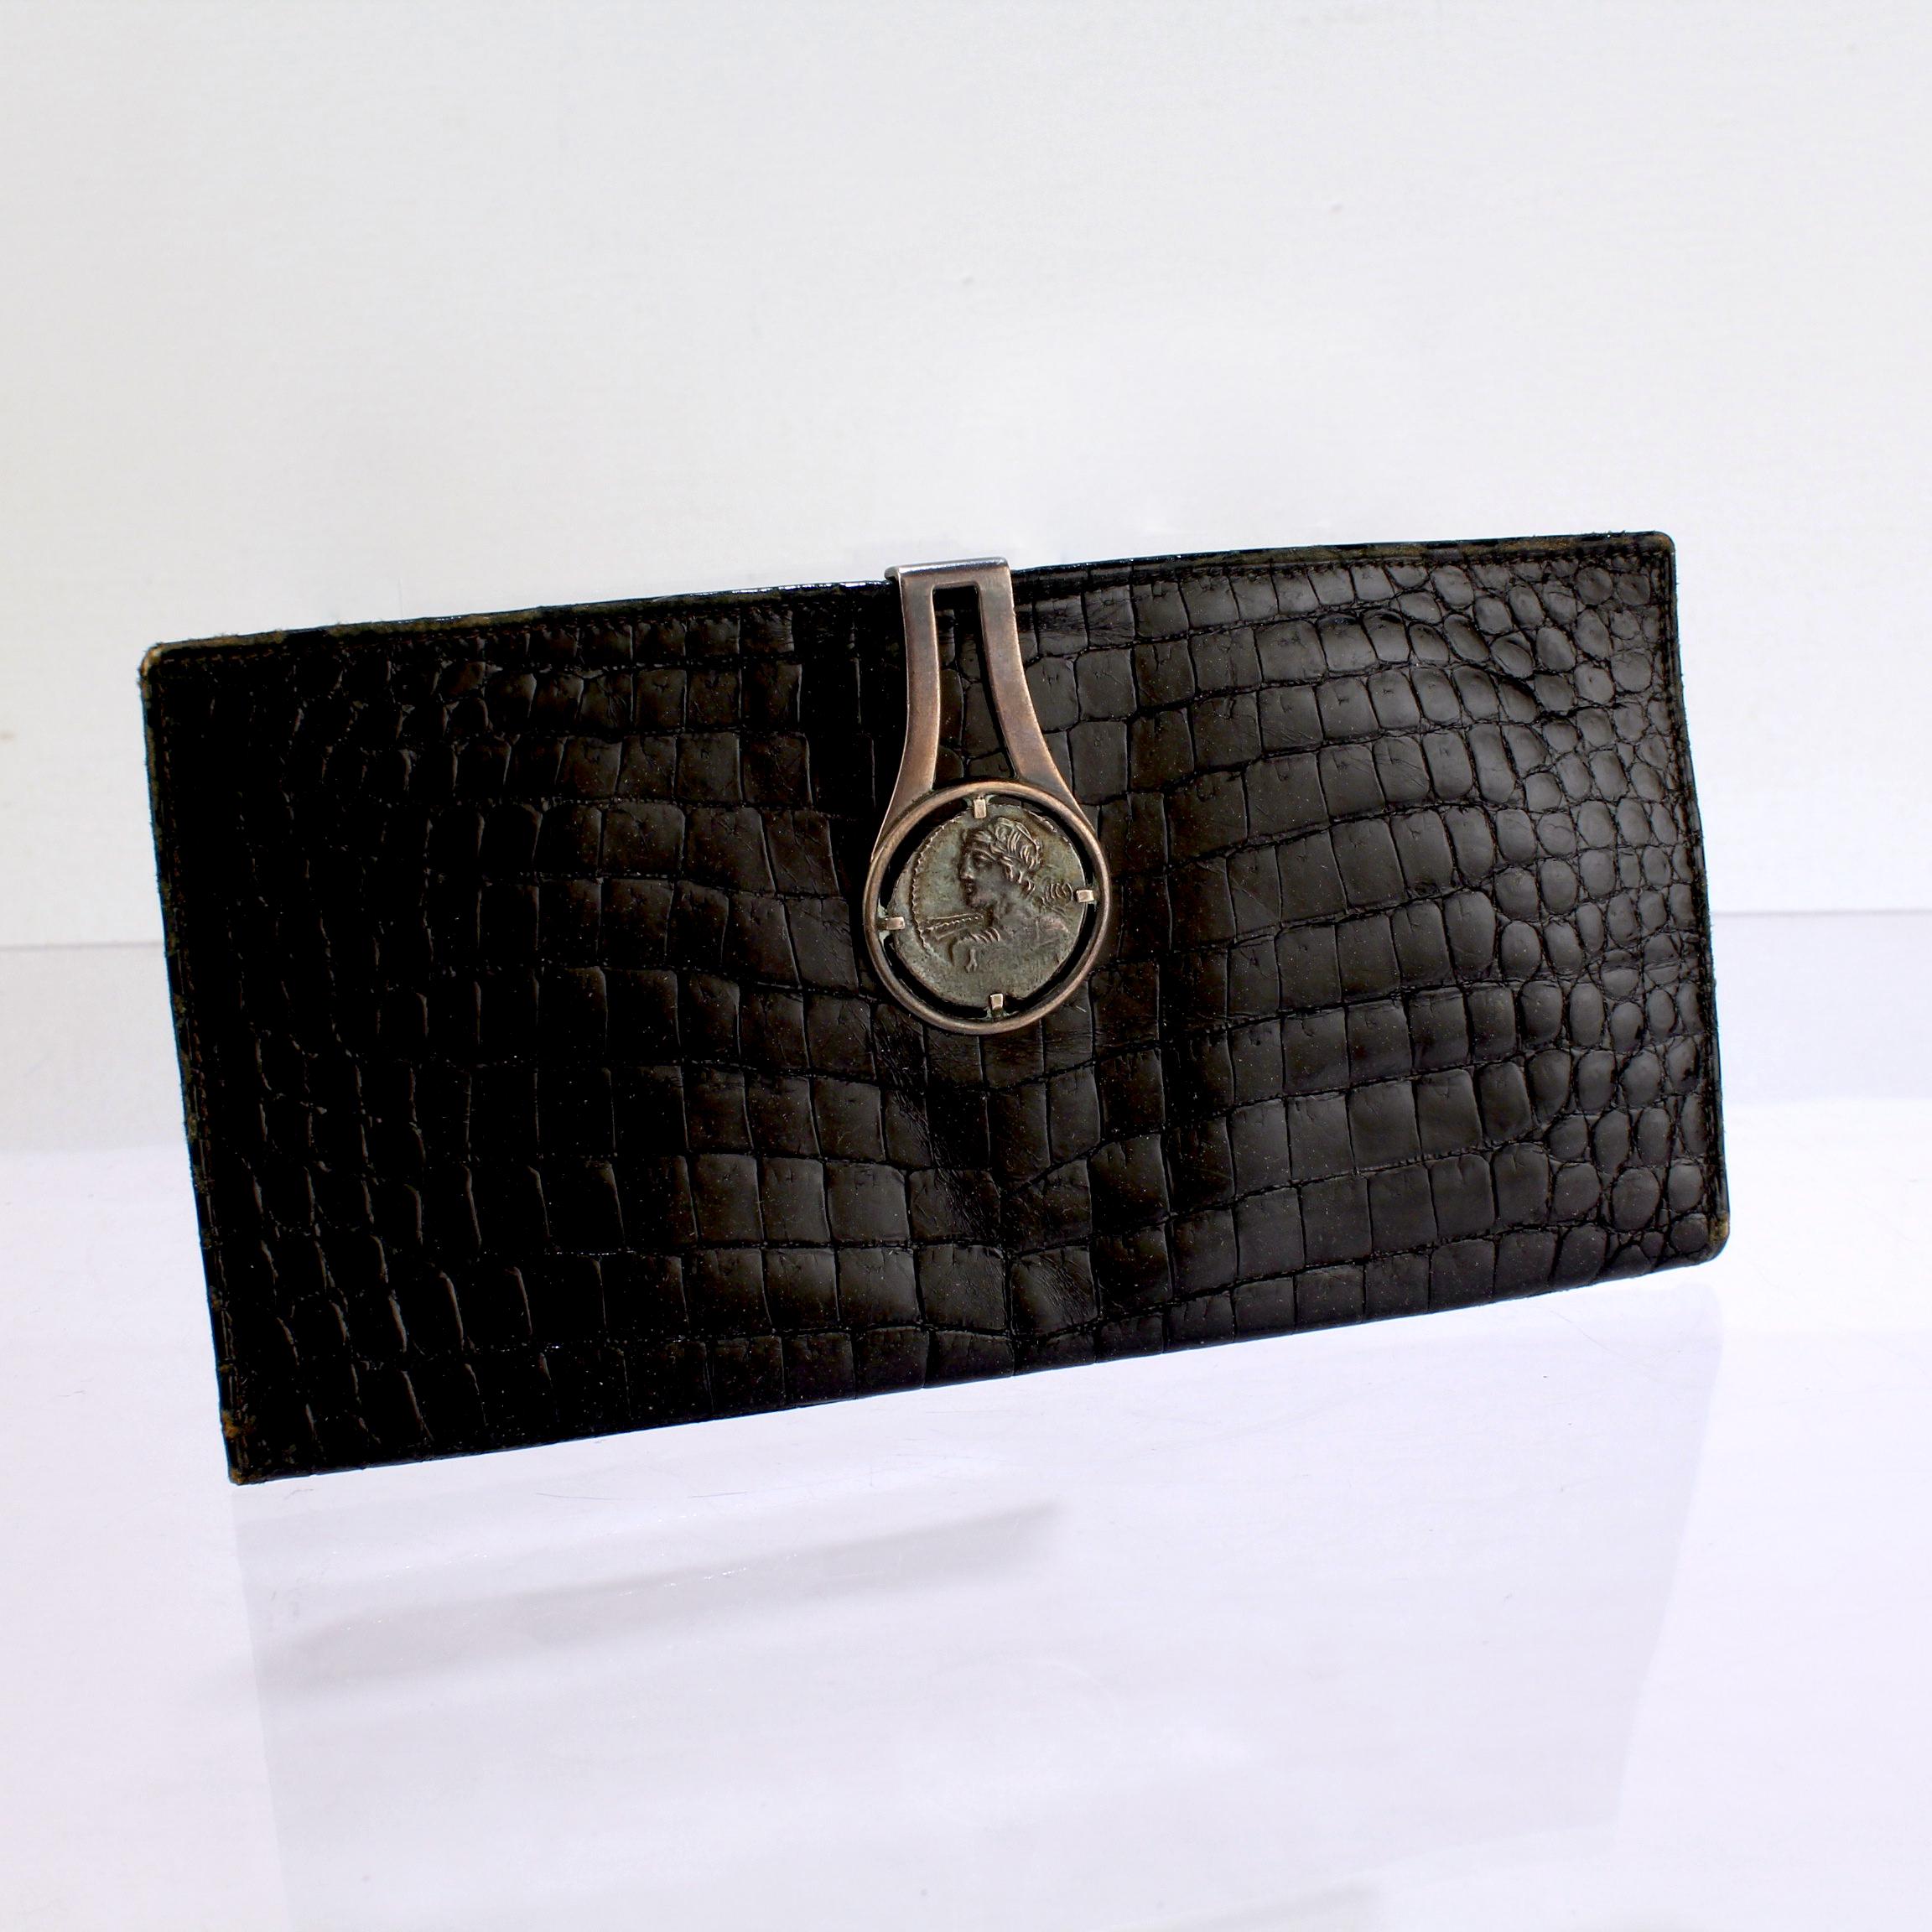 Eine schöne Gucci-Brieftasche.

Mit schwarzem Alligatorlederimitat und einem integrierten Verschluss aus Sterlingsilber.

Der silberne Verschluss ist mit einer silbernen Münze im antiken römischen Stil besetzt.

Einfach ein tolles Portemonnaie von